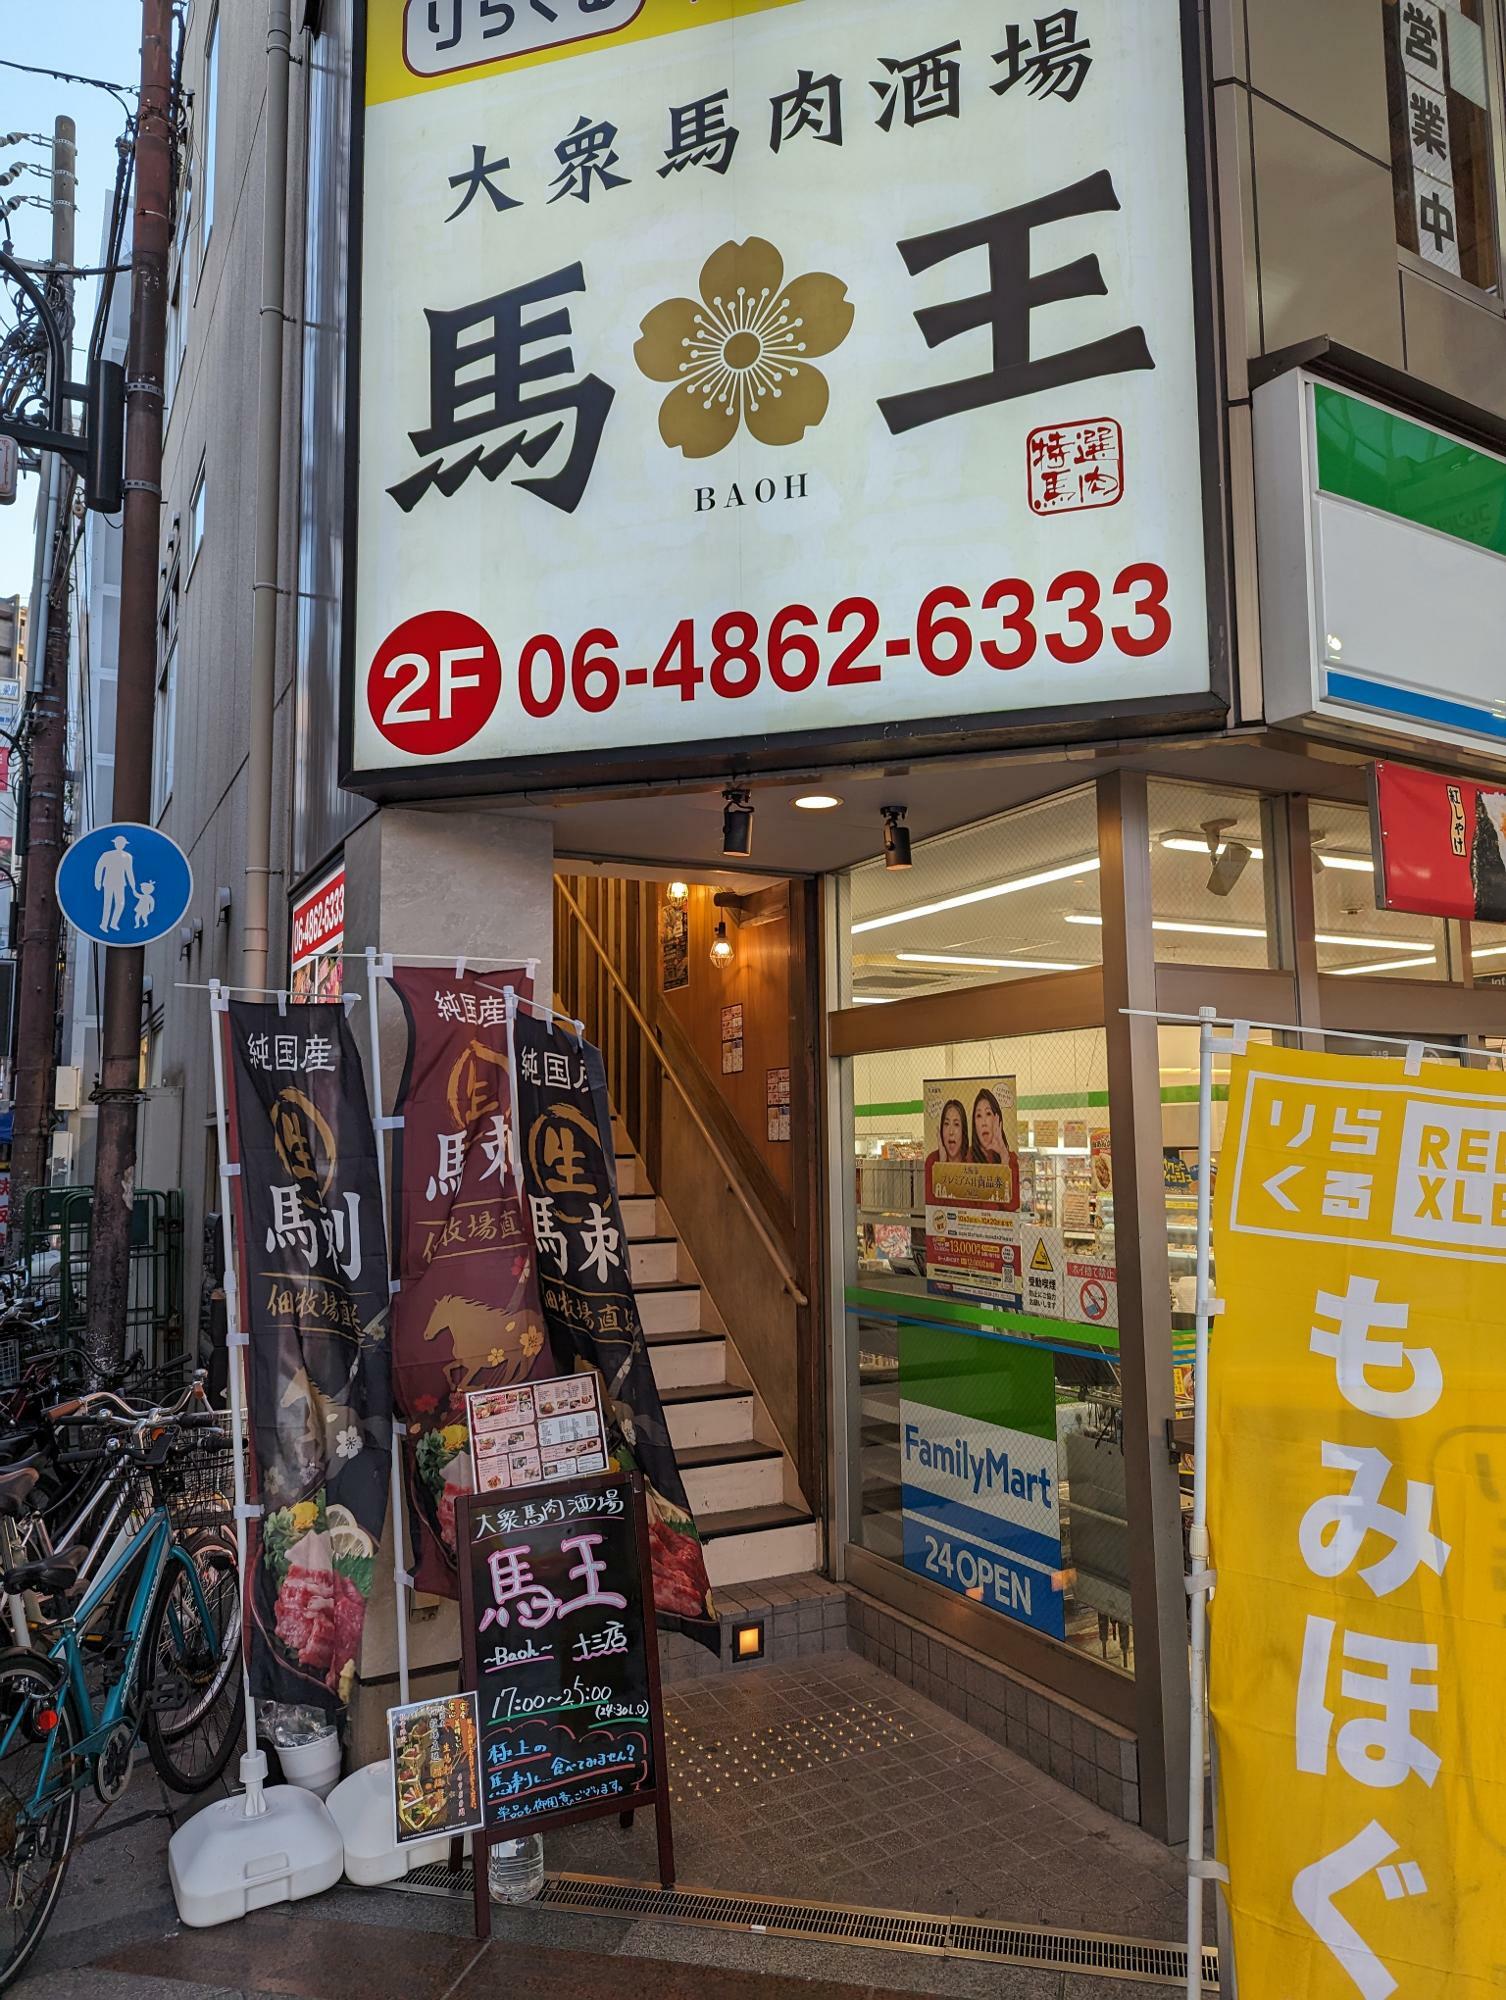 阪急十三駅西口より徒歩1分 FamilyMart横の階段を上がります。 